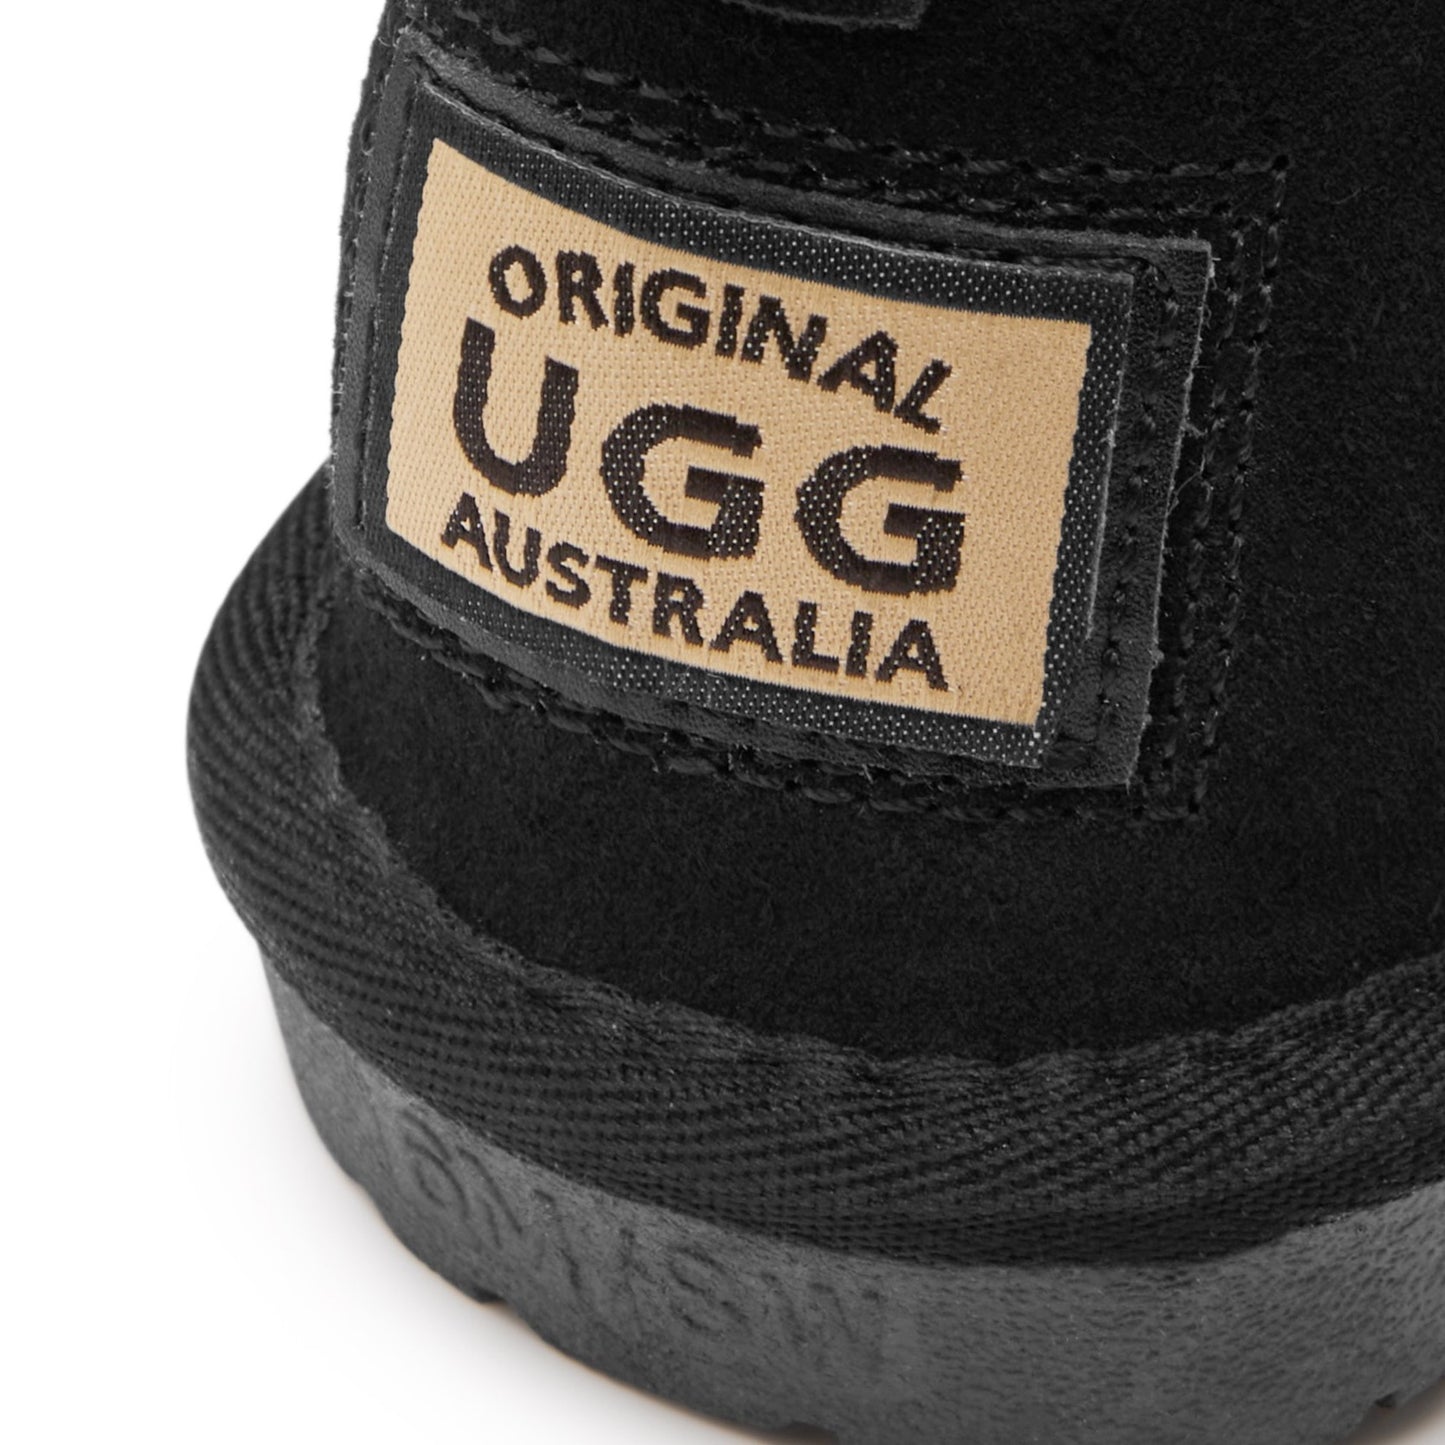 Originals Ugg Australia Mini Sheepskin Boot Black